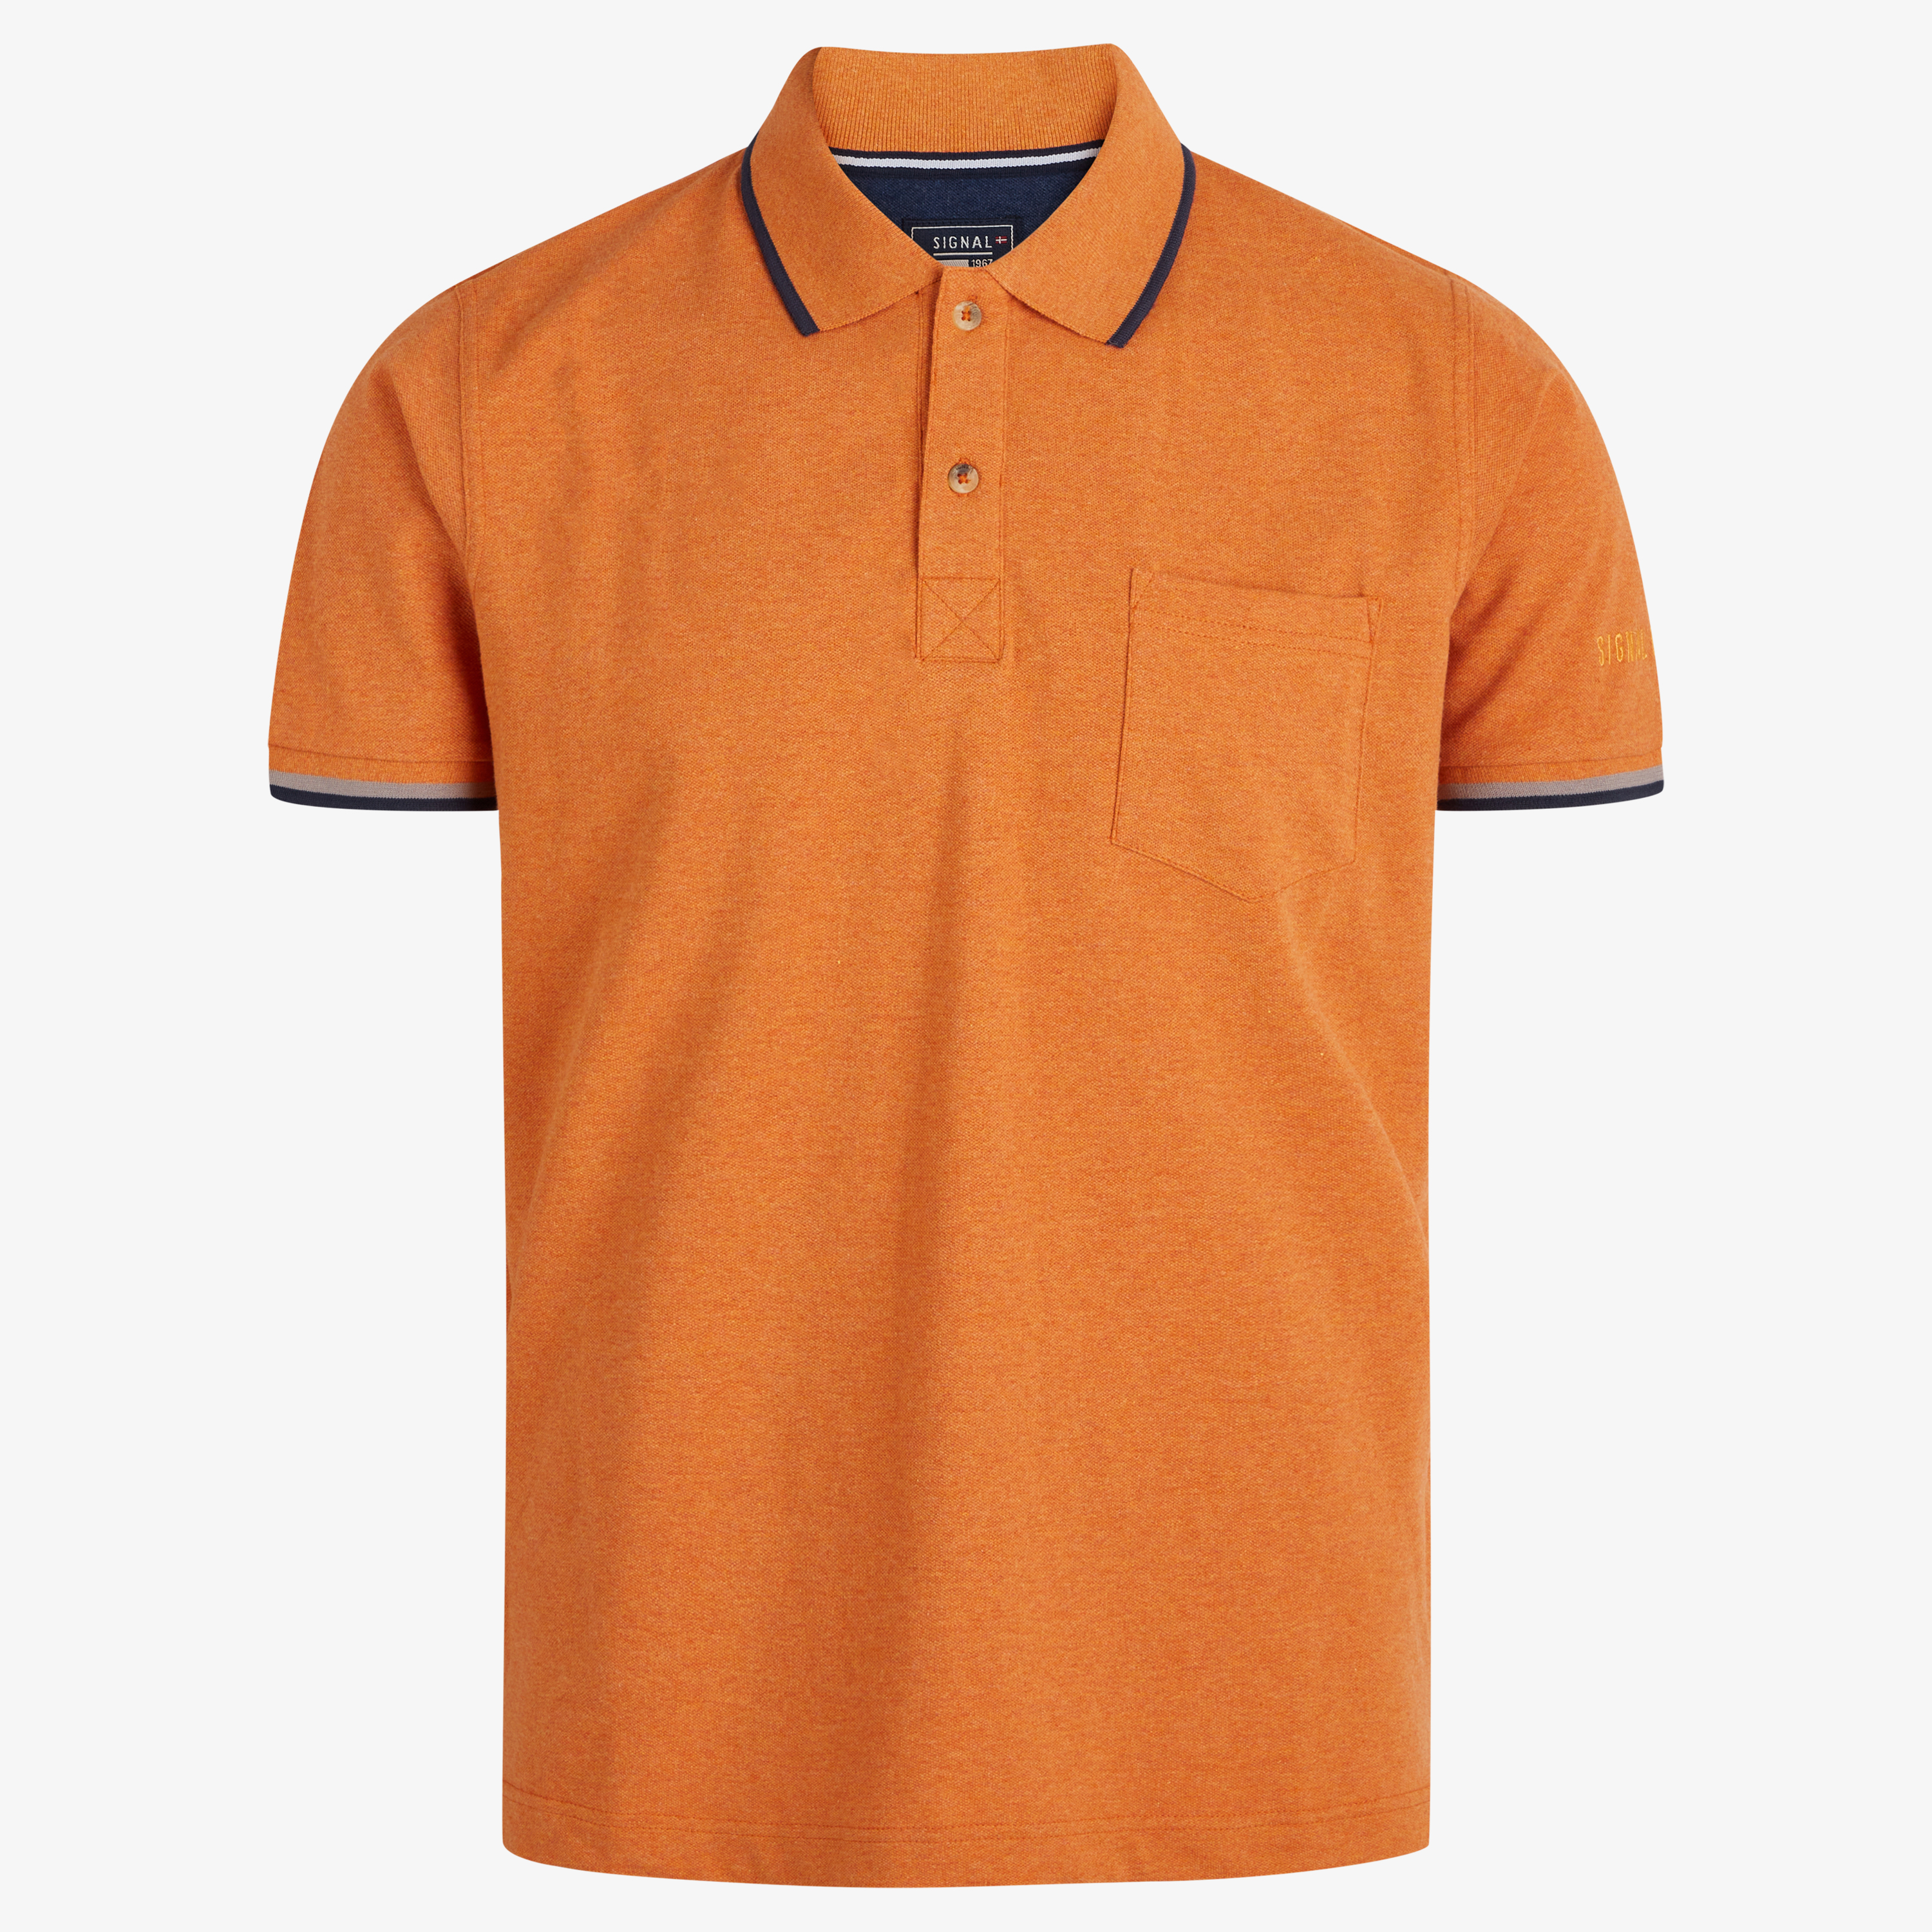  Nalle Polo T-shirt, Burnt Orange, XL